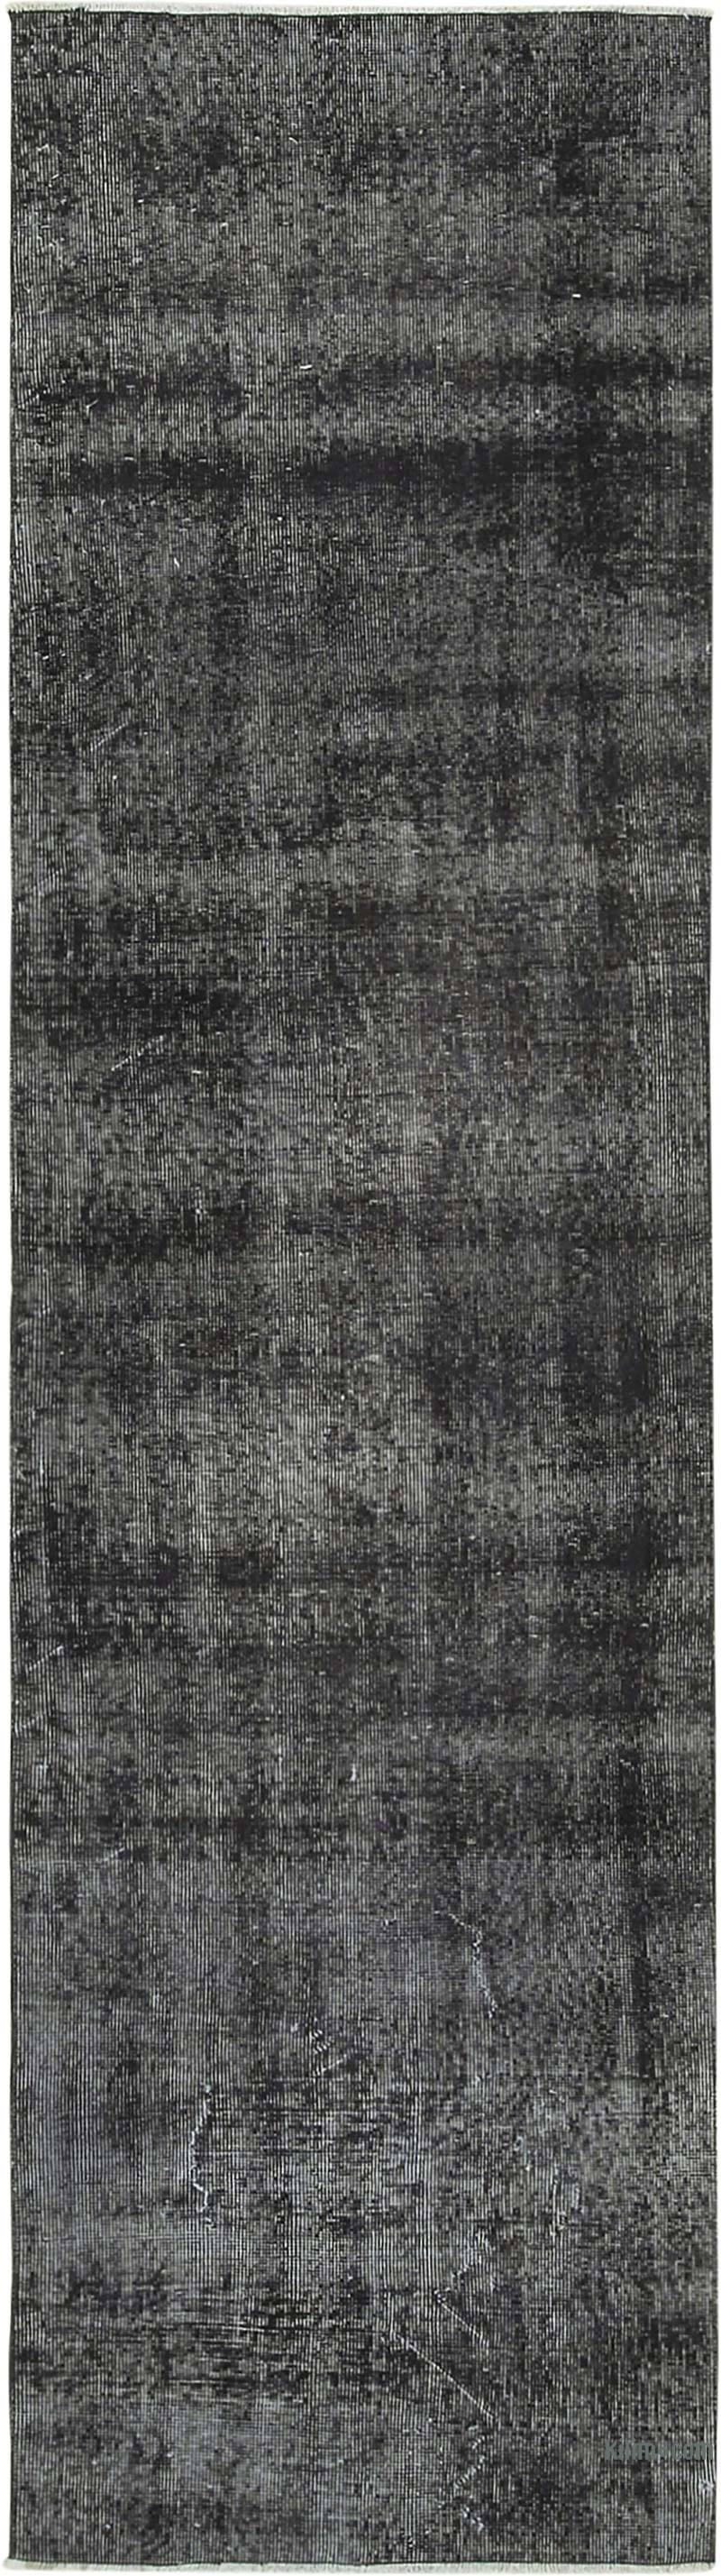 Siyah Boyalı El Dokuma Vintage Halı Yolluk - 80 cm x 290 cm - K0054490